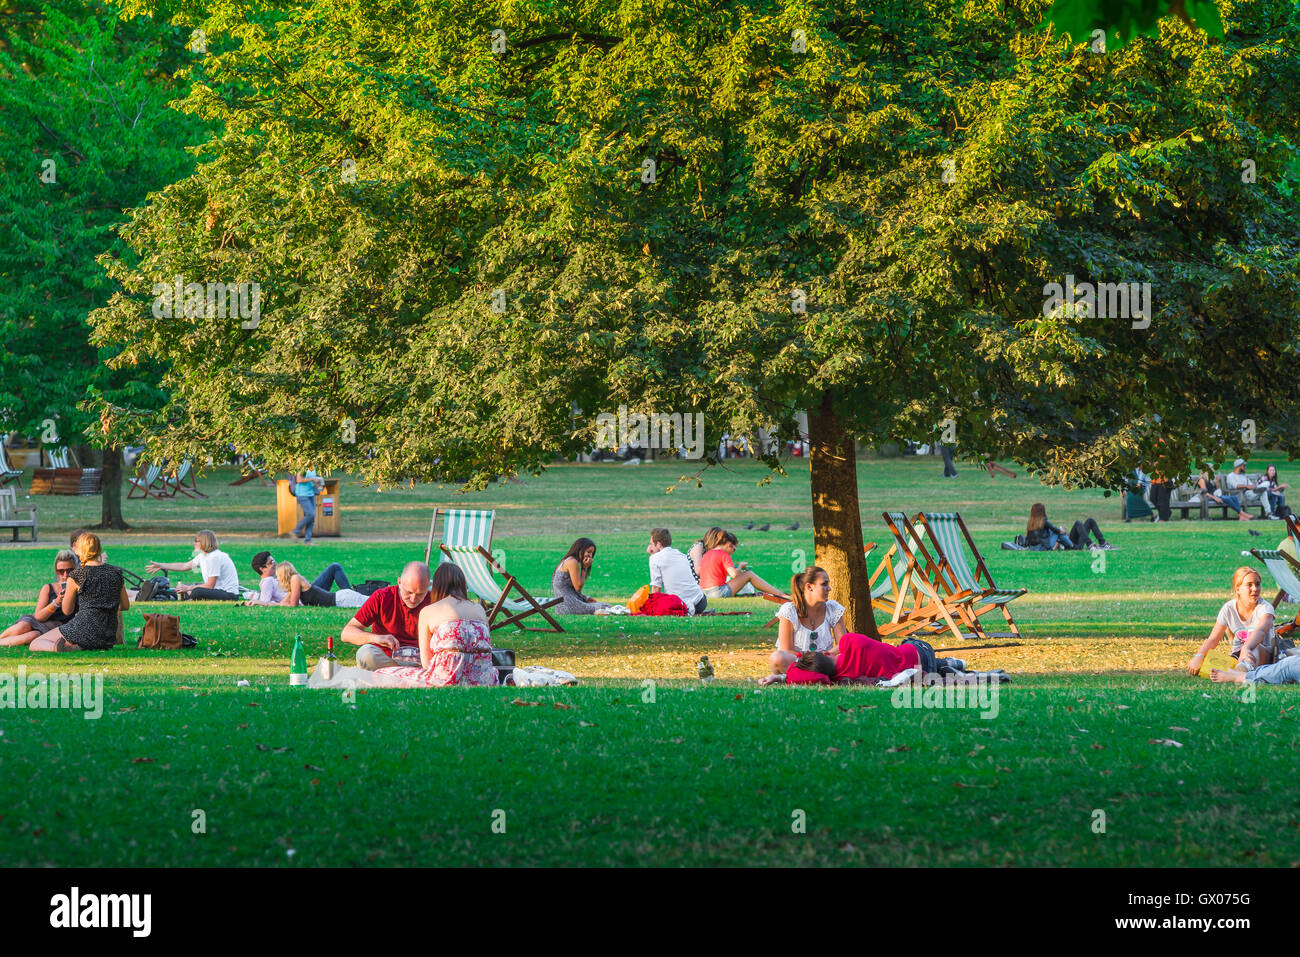 People Park estate, vista delle persone che si rilassano in una calda serata estiva a St James's Park, nel centro di Londra, Inghilterra, Regno Unito. Foto Stock